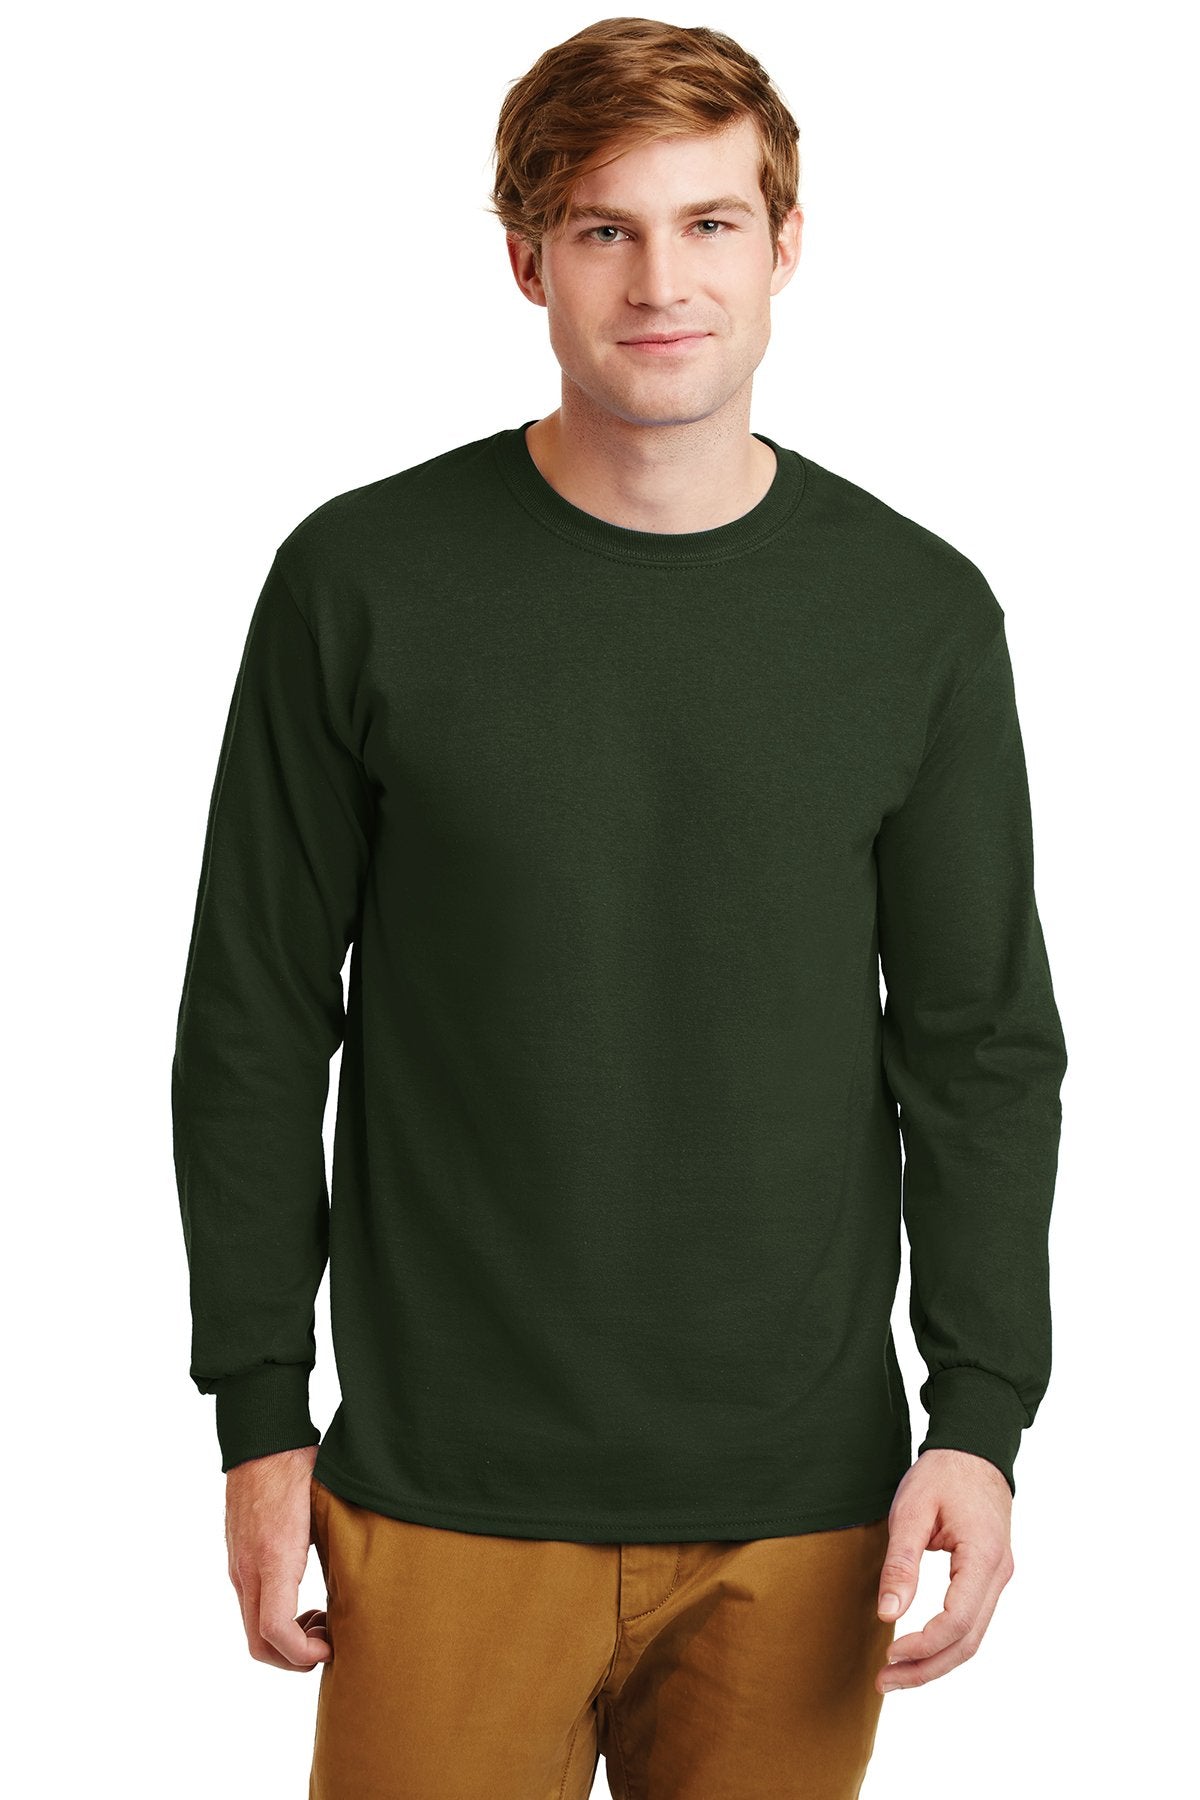 gildan ultra cotton long sleeve t shirt g2400 forest green